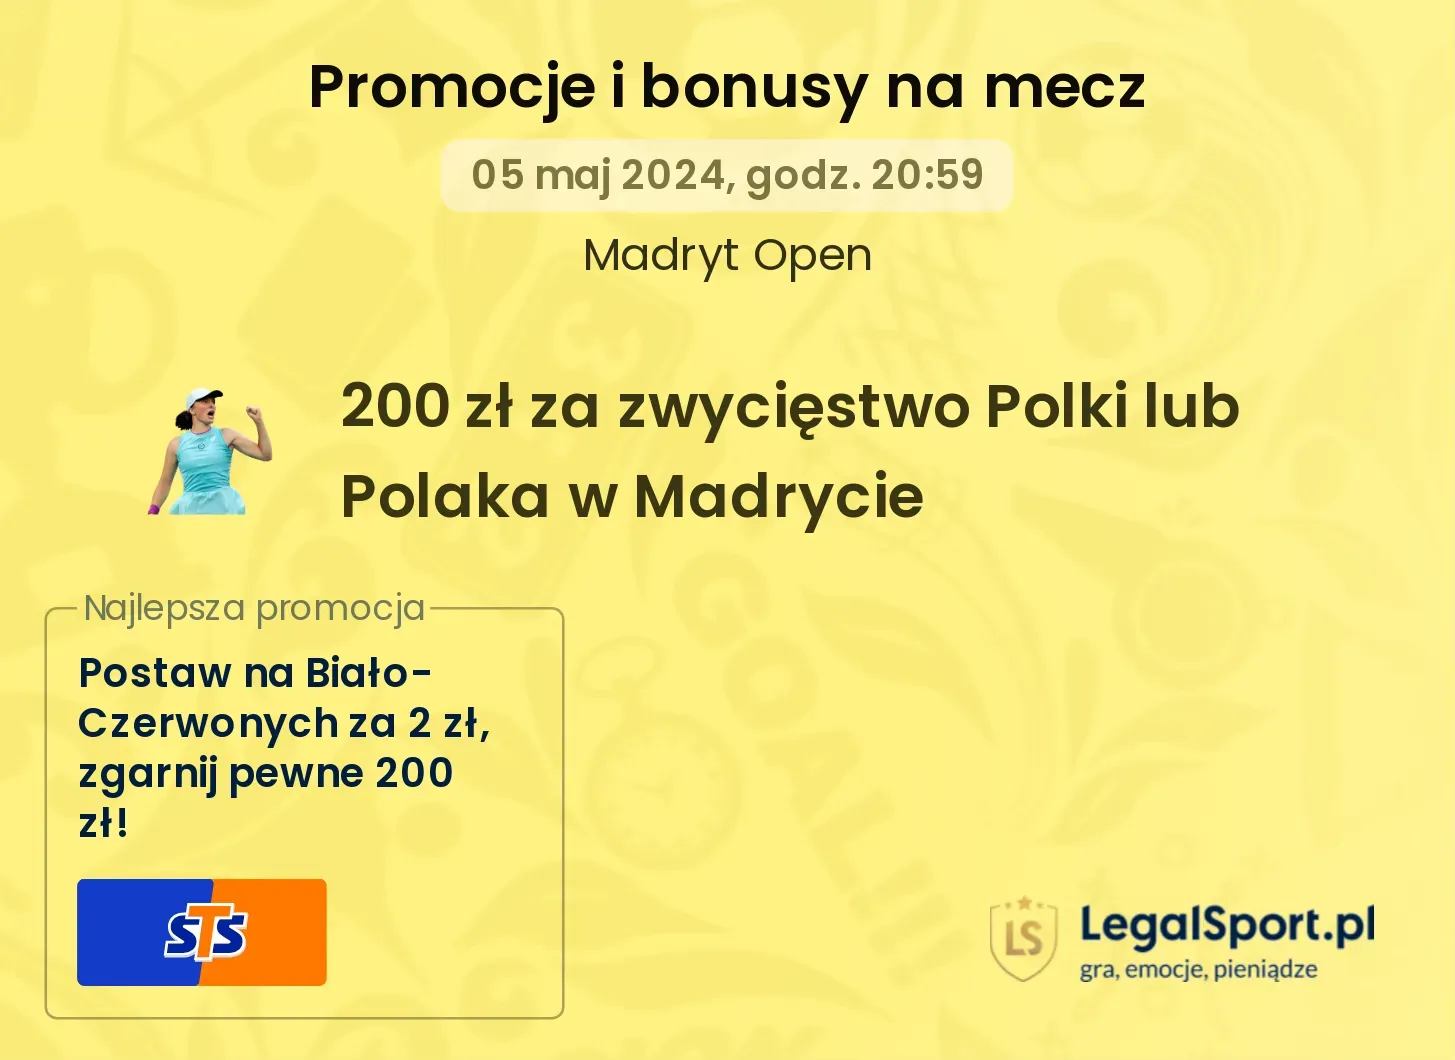 200 zł za zwycięstwo Polki lub Polaka w meczu Madryt Open w STS